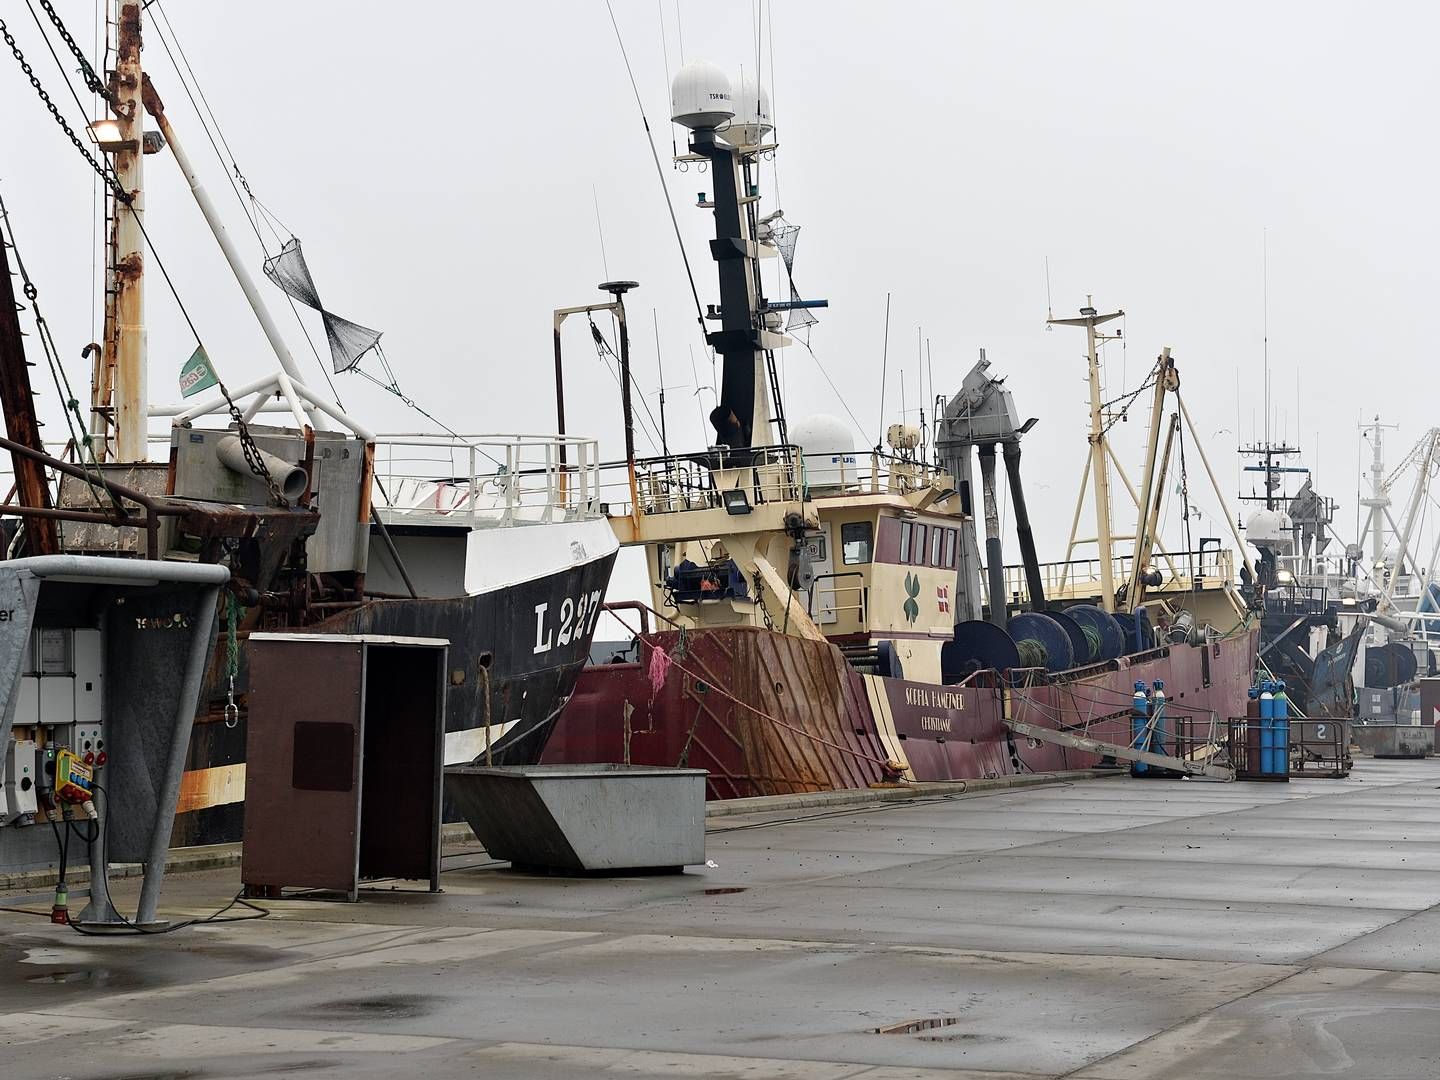 Bomtrawl skal forbydes i danske farvande - i første omgange for danske fiskefartøjer og på sigt også udenlandske, meddeler regeringen. | Foto: Ernst van Norde/Ritzau Scanpix.